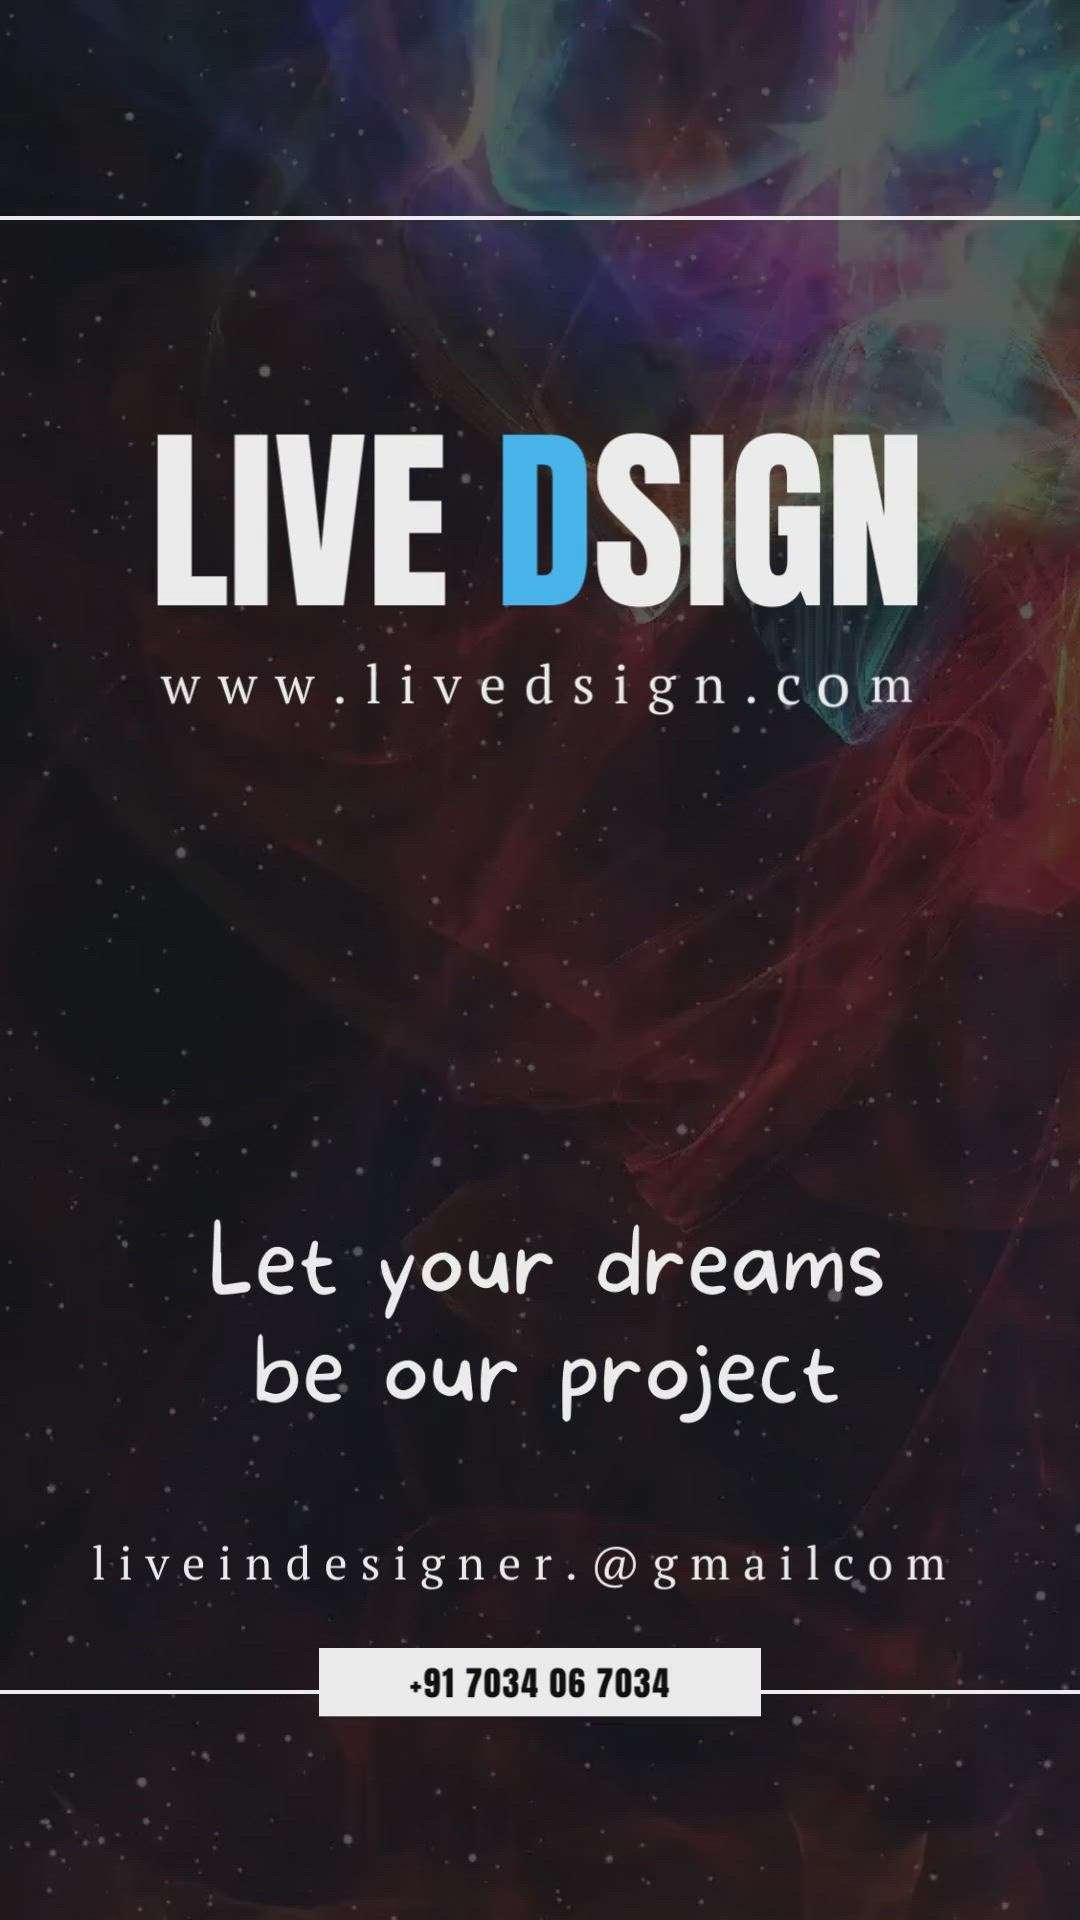 Live Dsign
www.livedsign.com